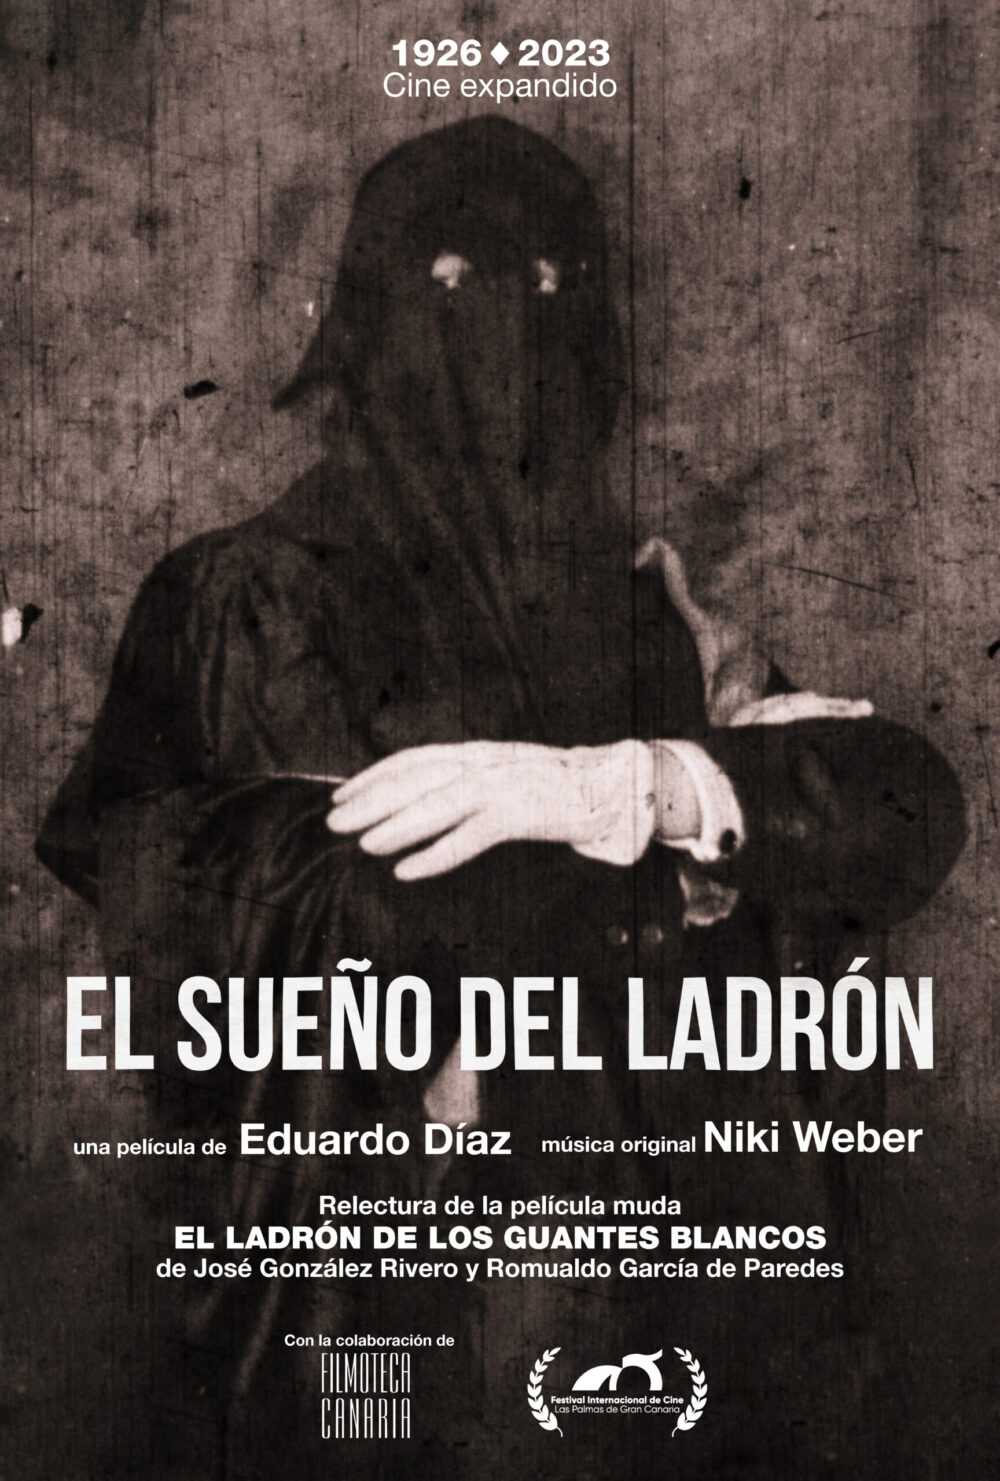 Imagen del cartel promocional de la película de Eduardo Díaz El Ladrón de los guantes blancos.